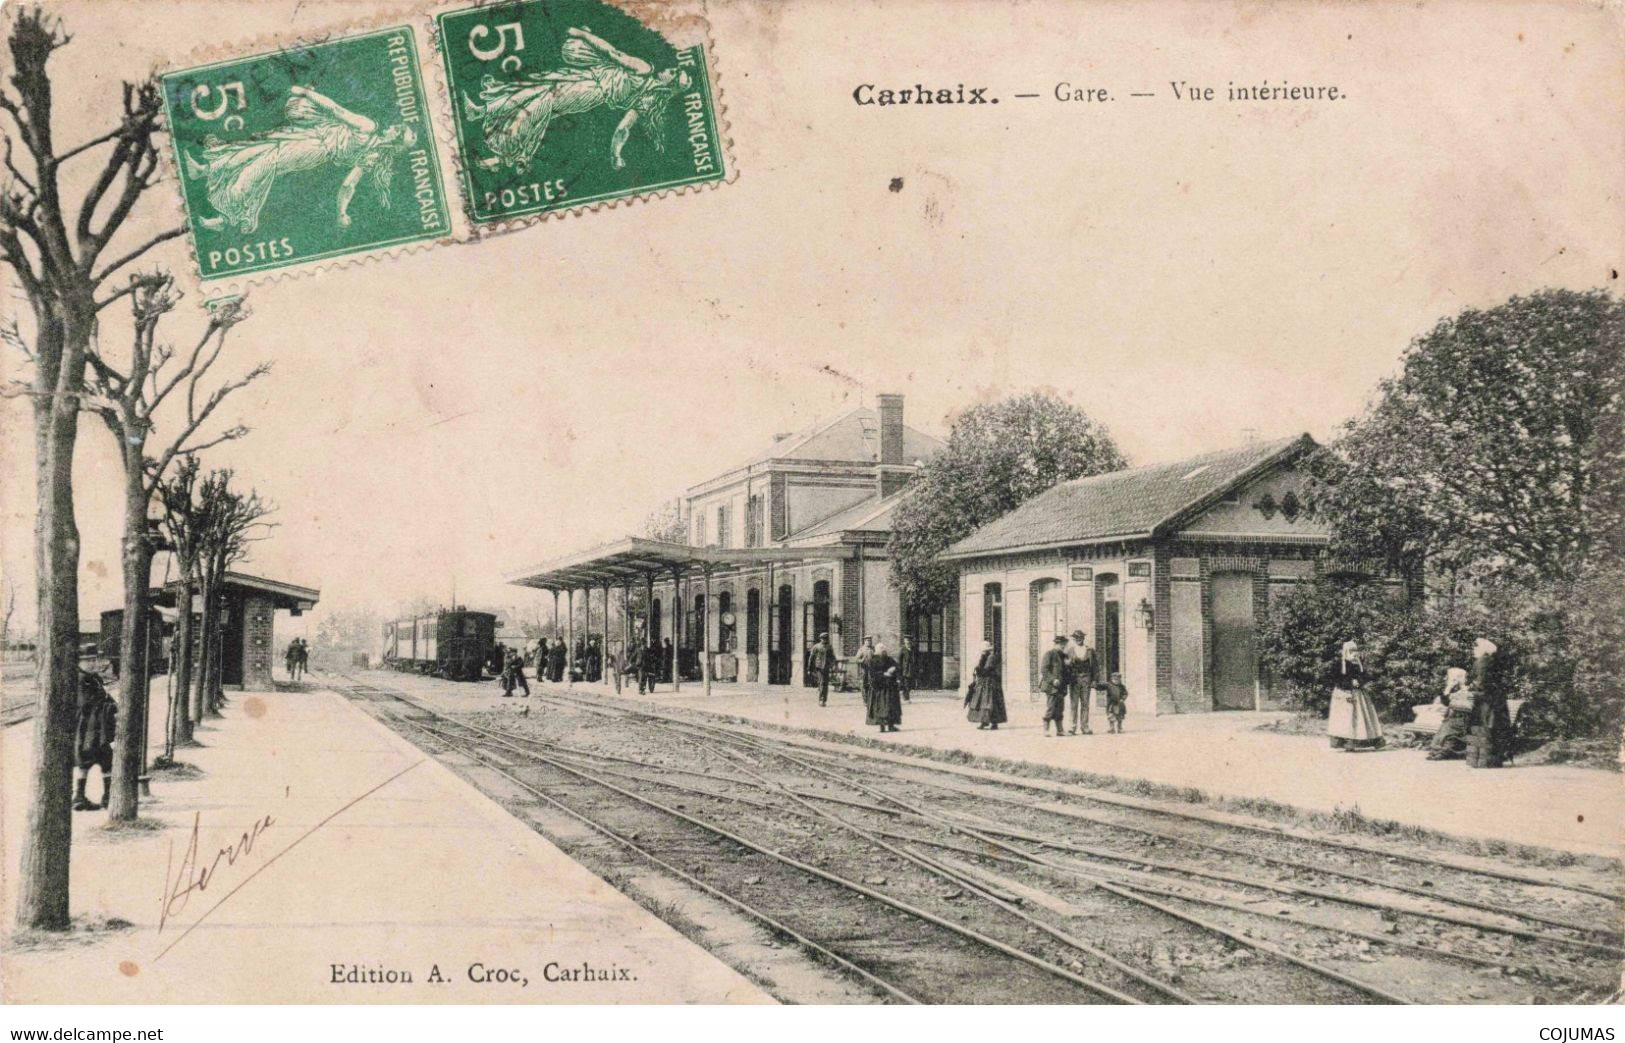 29 - CARHAIX - S02583 - Gare - Vue Intérieure - Train - L1 - Carhaix-Plouguer